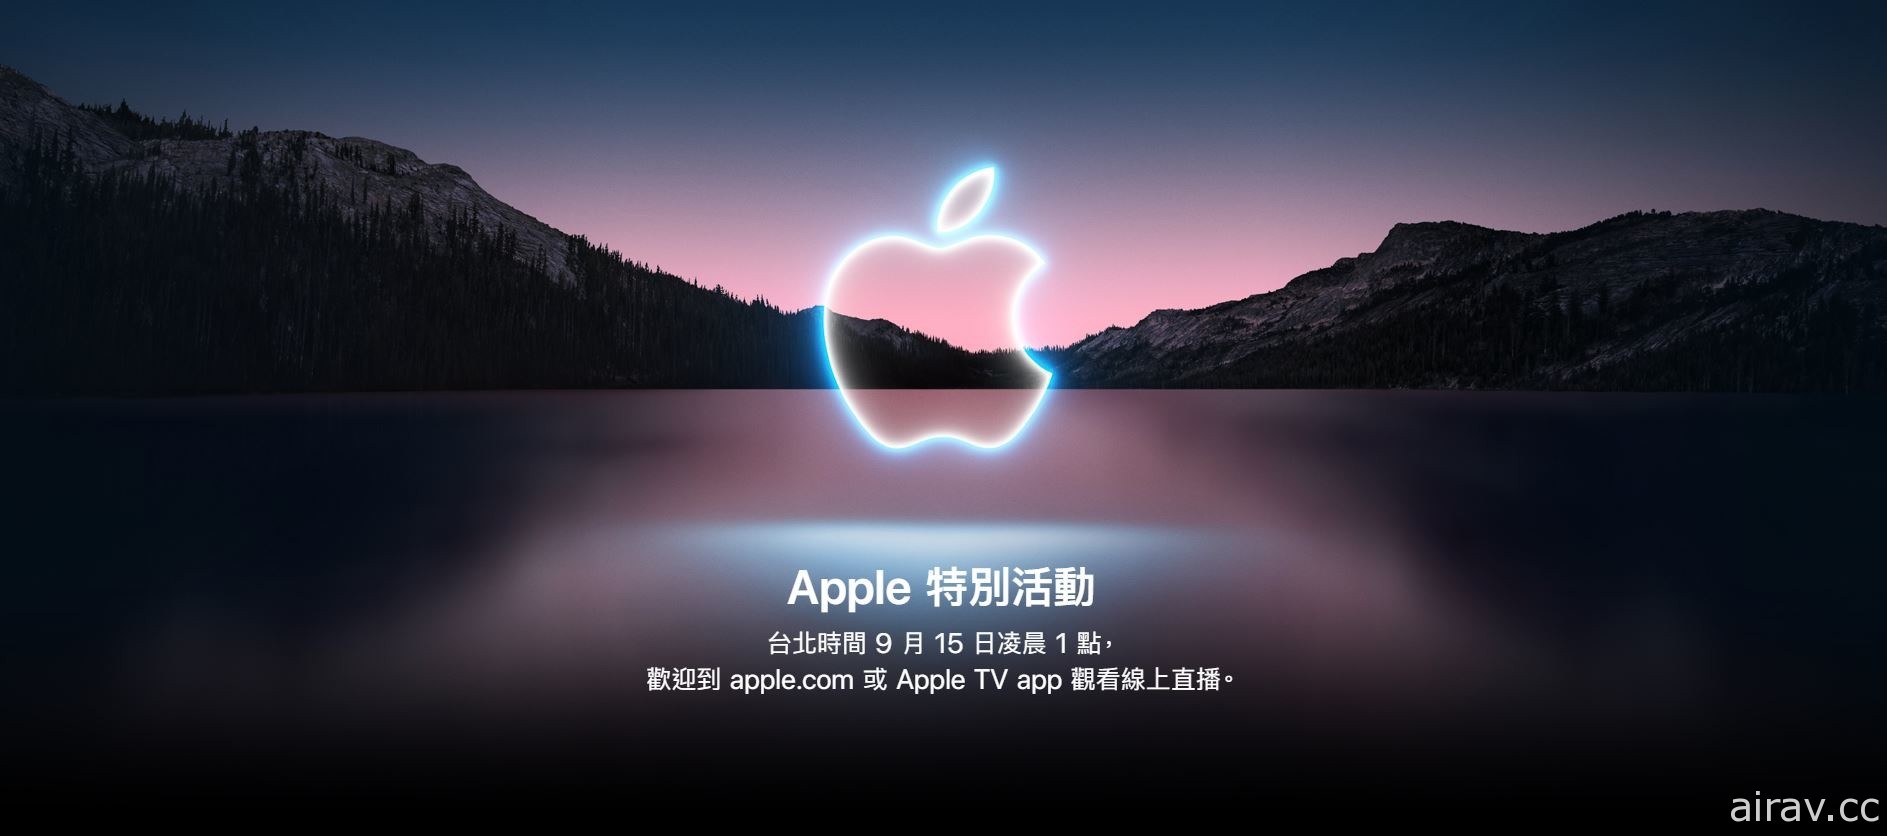 蘋果 2021 年秋季發表會將於 15 日凌晨正式登場 有望公開新 iPhone 資訊